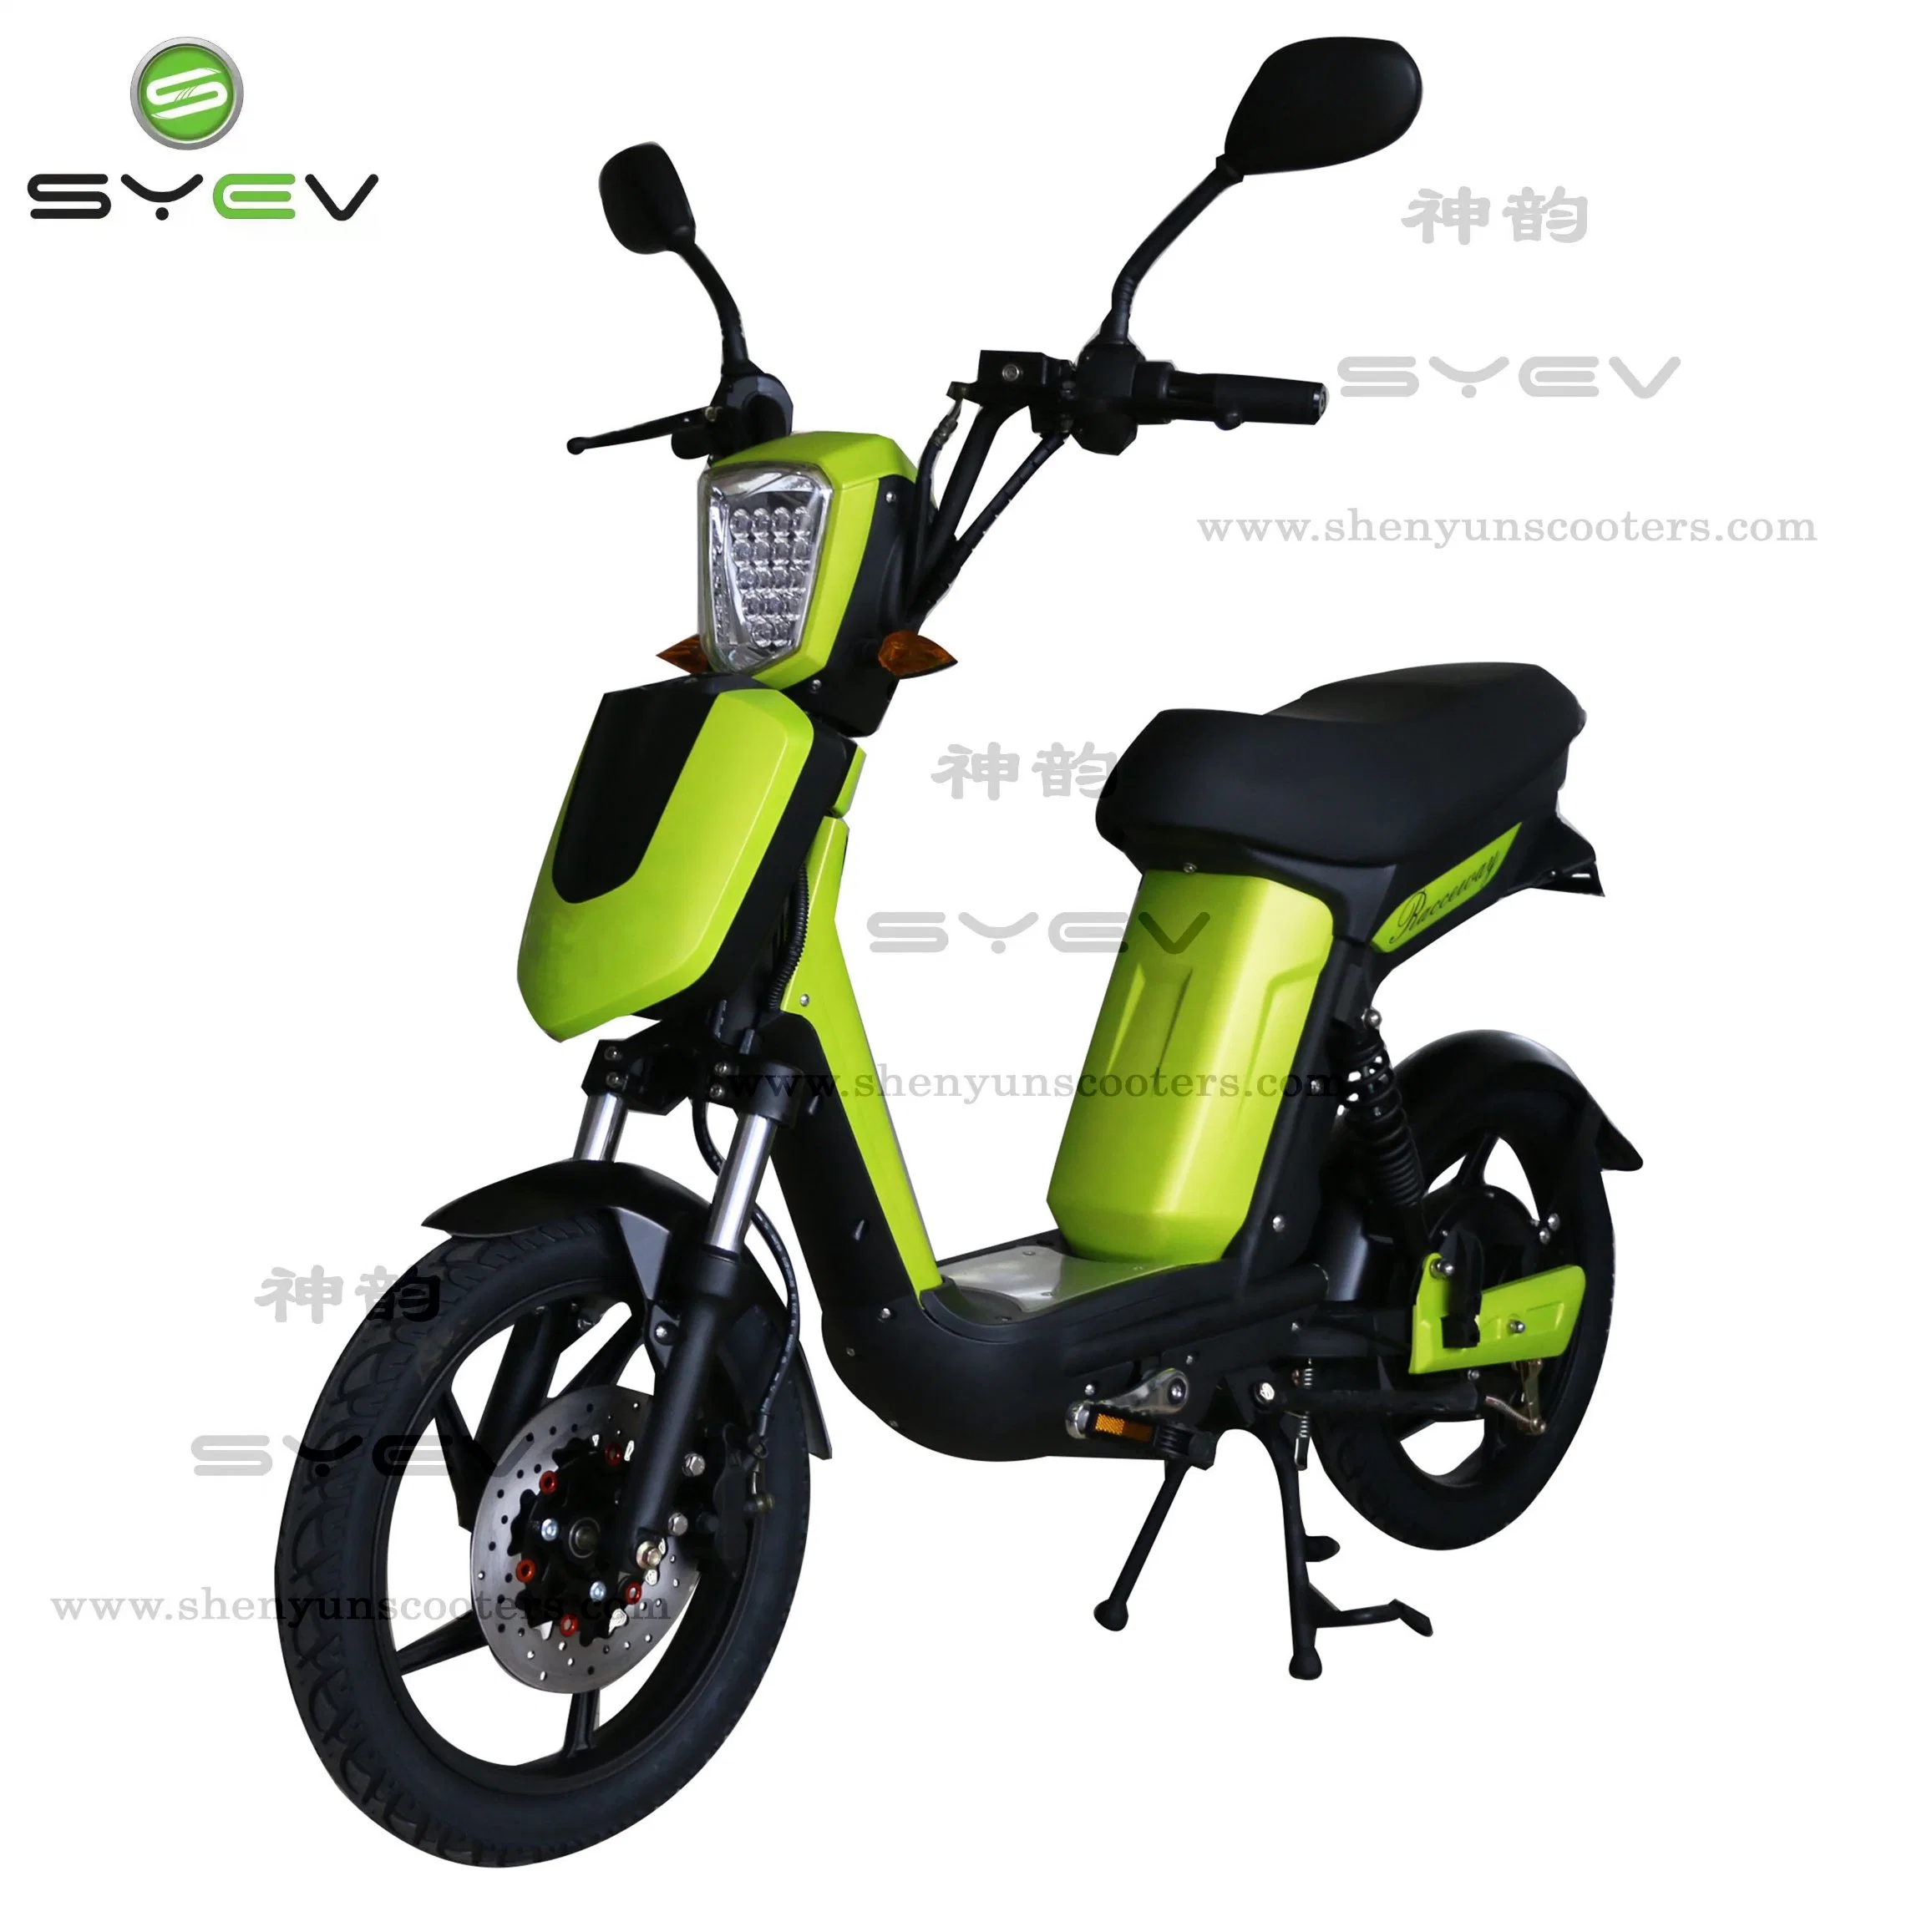 Syev Precio barato buena calidad 500W/800W BLDC Motor eléctrico chino Motocicleta Scooter Bike con frenos de disco/tambor